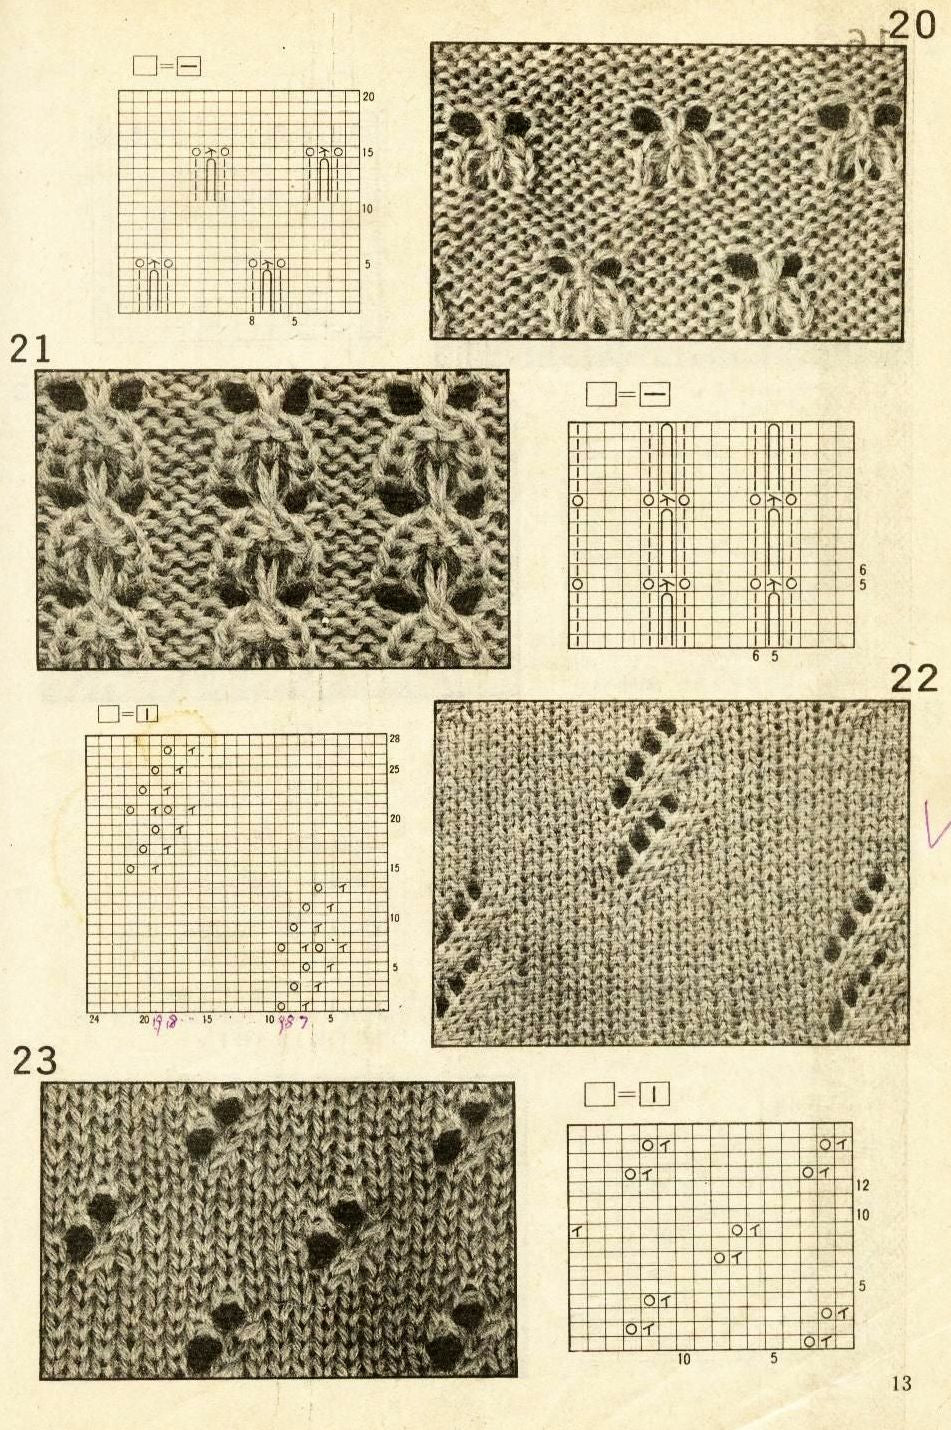 Modern openwork knitting patterns